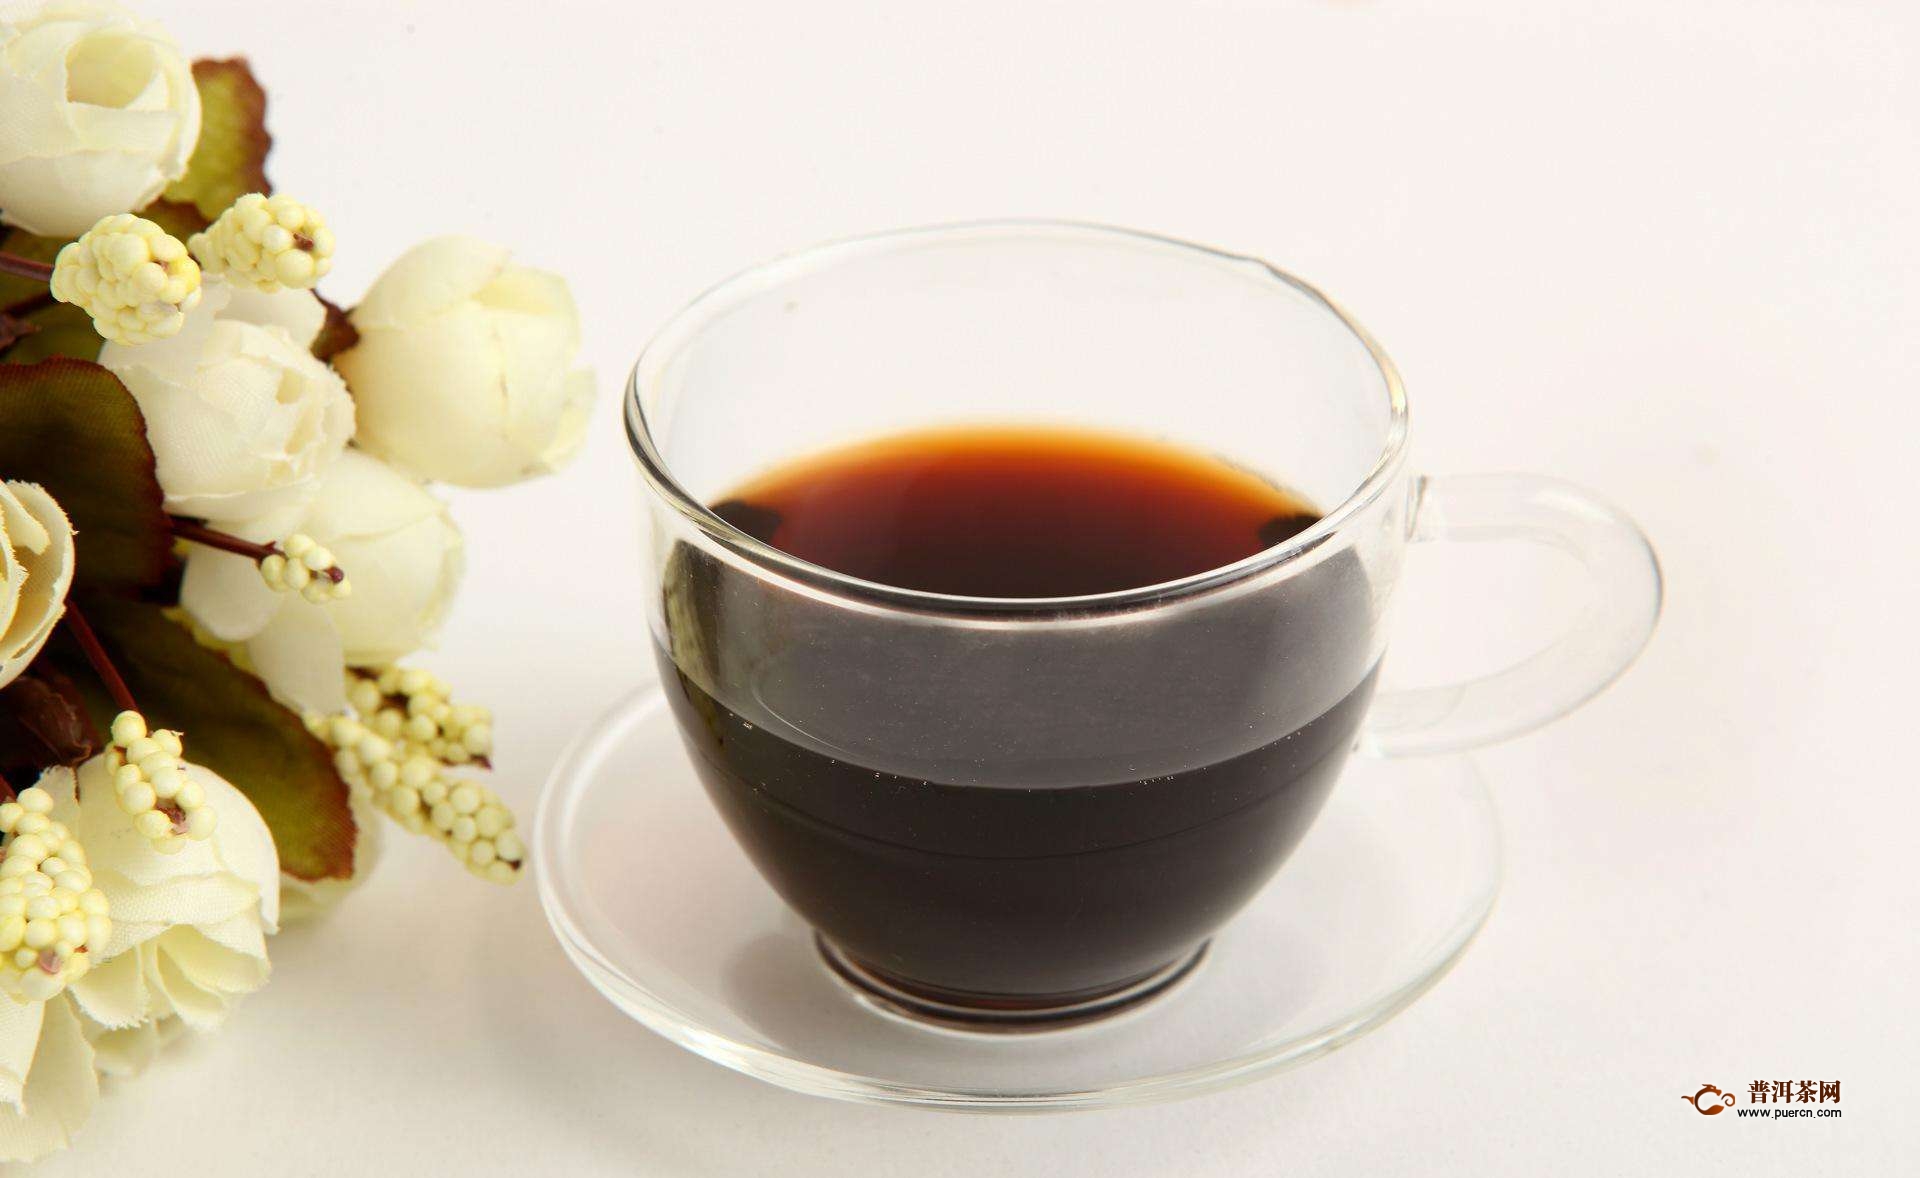 红茶生姜加蜂蜜的功效,有效预防感冒!